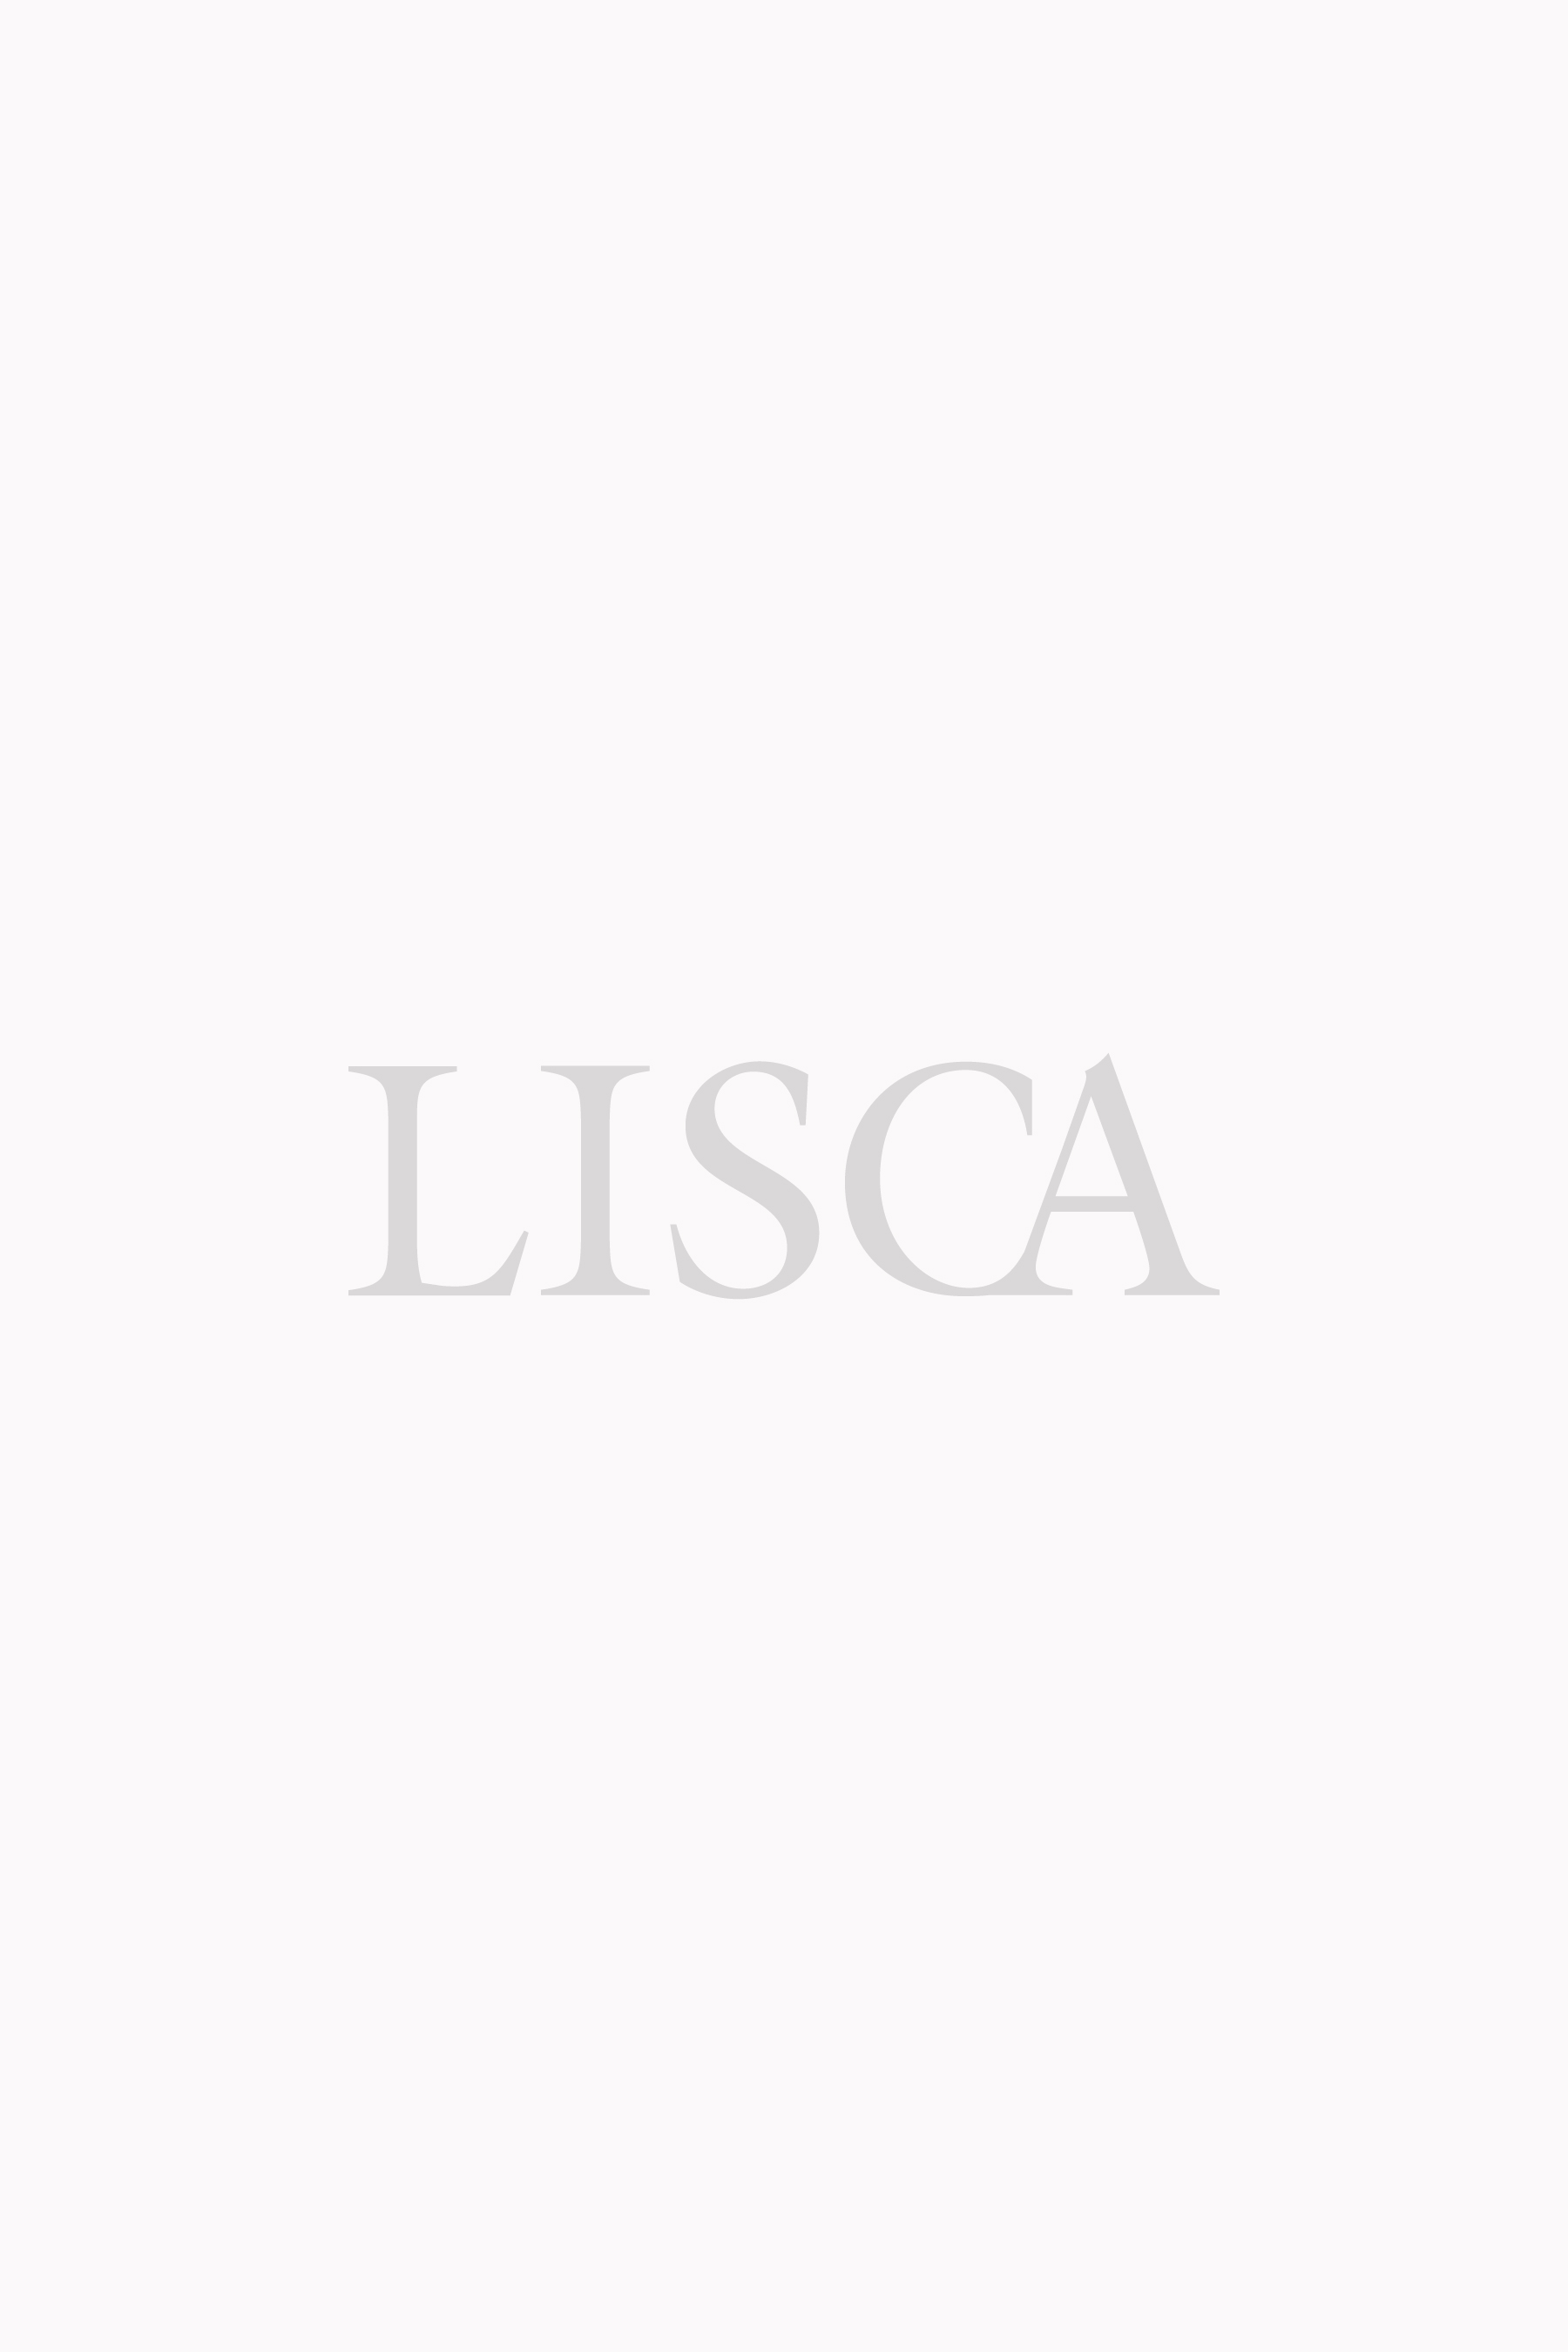 "Linosa" Underwired Bikini Top